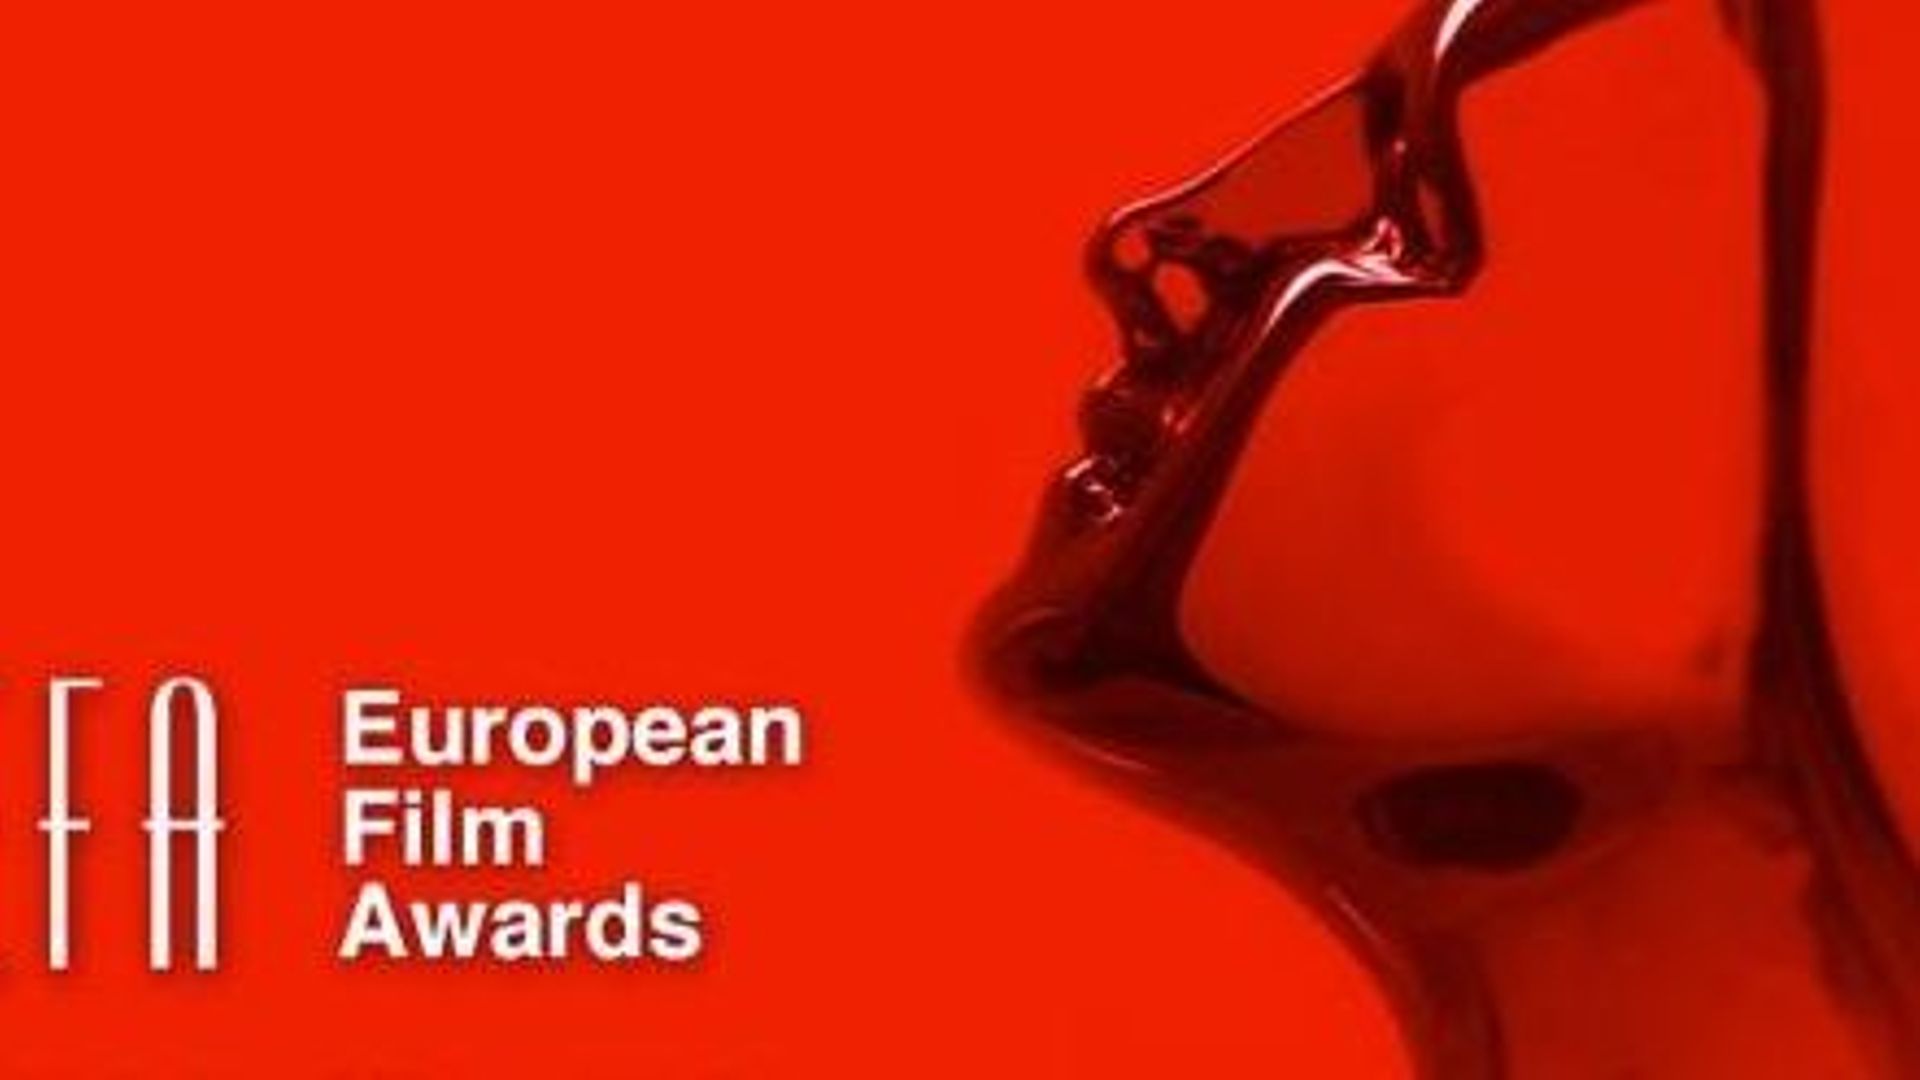 European Film Awards: la Belgique à nouveau bien représentée  dans la catégorie des films d'animation